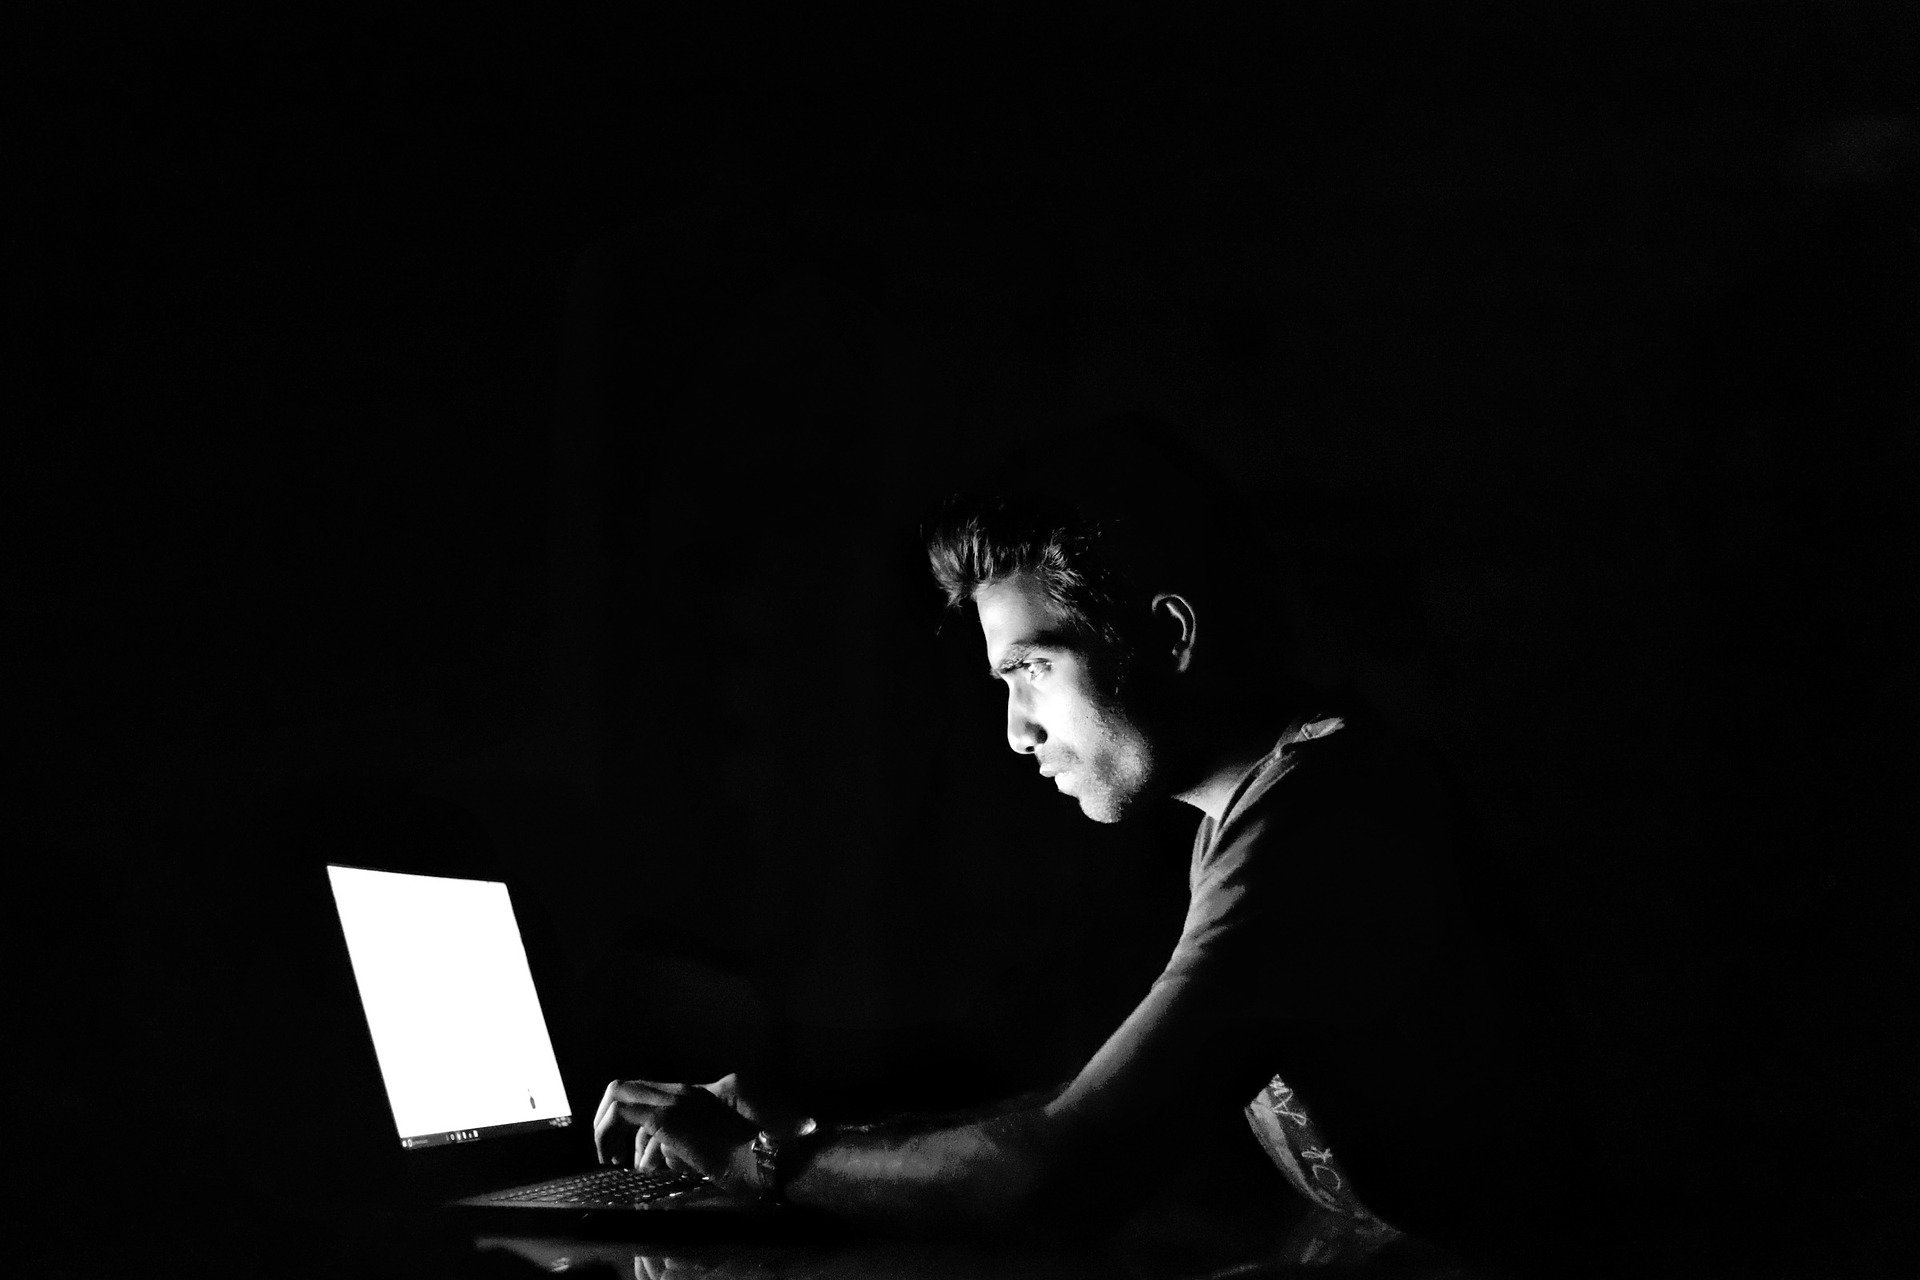 Aunque usualmente se relaciona con niños y adolescentes, el ciberacoso también afecta a los adultos. (Foto Prensa Libre: Pixabay)